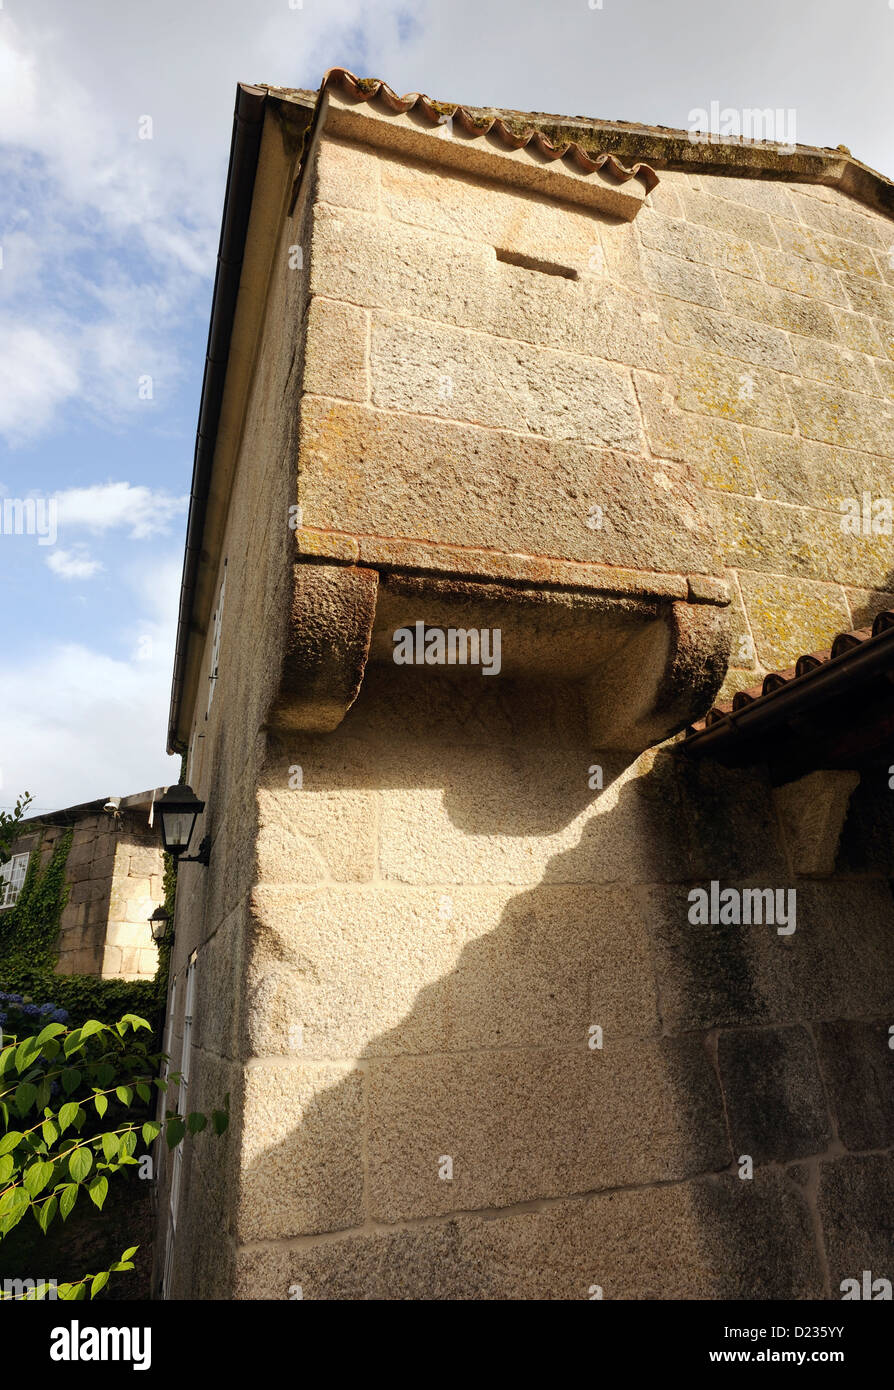 Équipements en Chambre toilettes dans un dix-huitième siècle, un guarderobe en encorbellement sur le jardin. Coles, Ourense, Galice, Espagne Banque D'Images